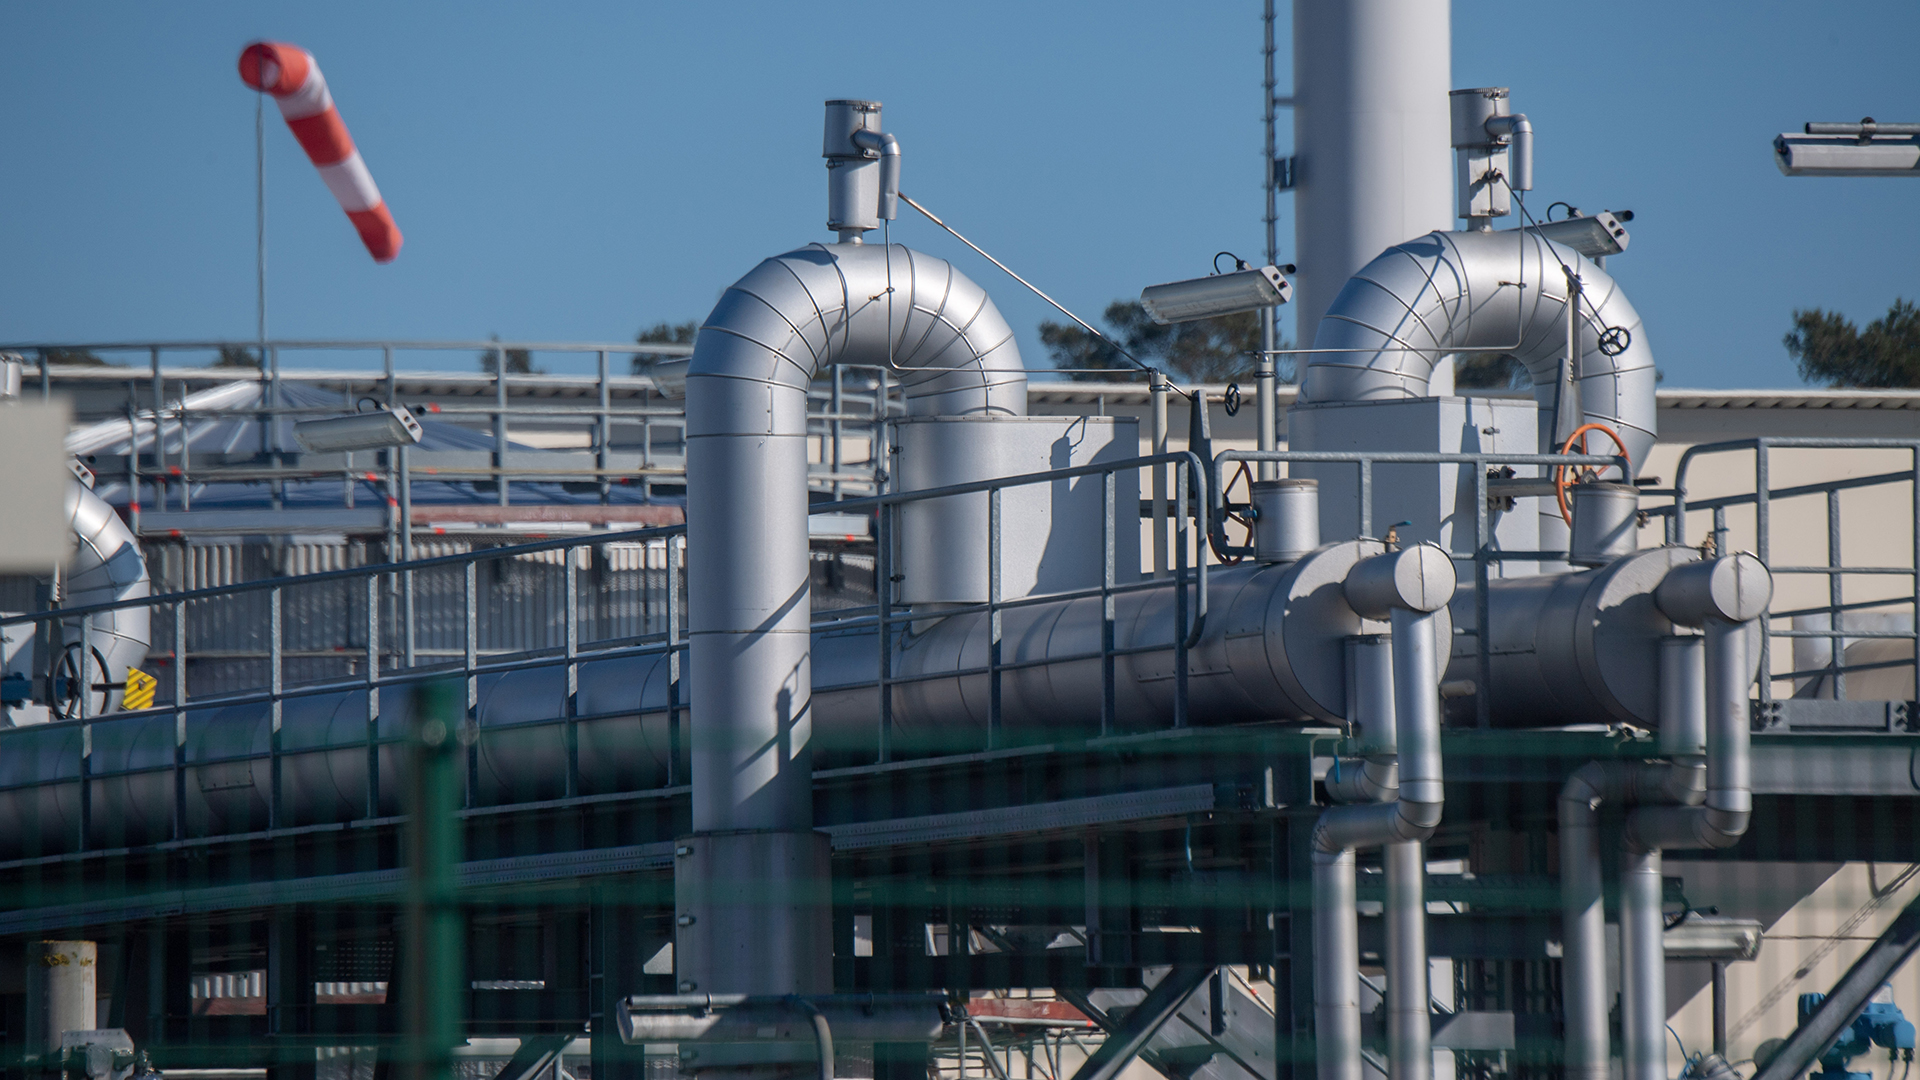 Rohrsysteme und Absperrvorrichtungen in der Gasempfangsstation der Ostseepipeline Nord Stream 1 und der Übernahmestation der Ferngasleitung OPAL.